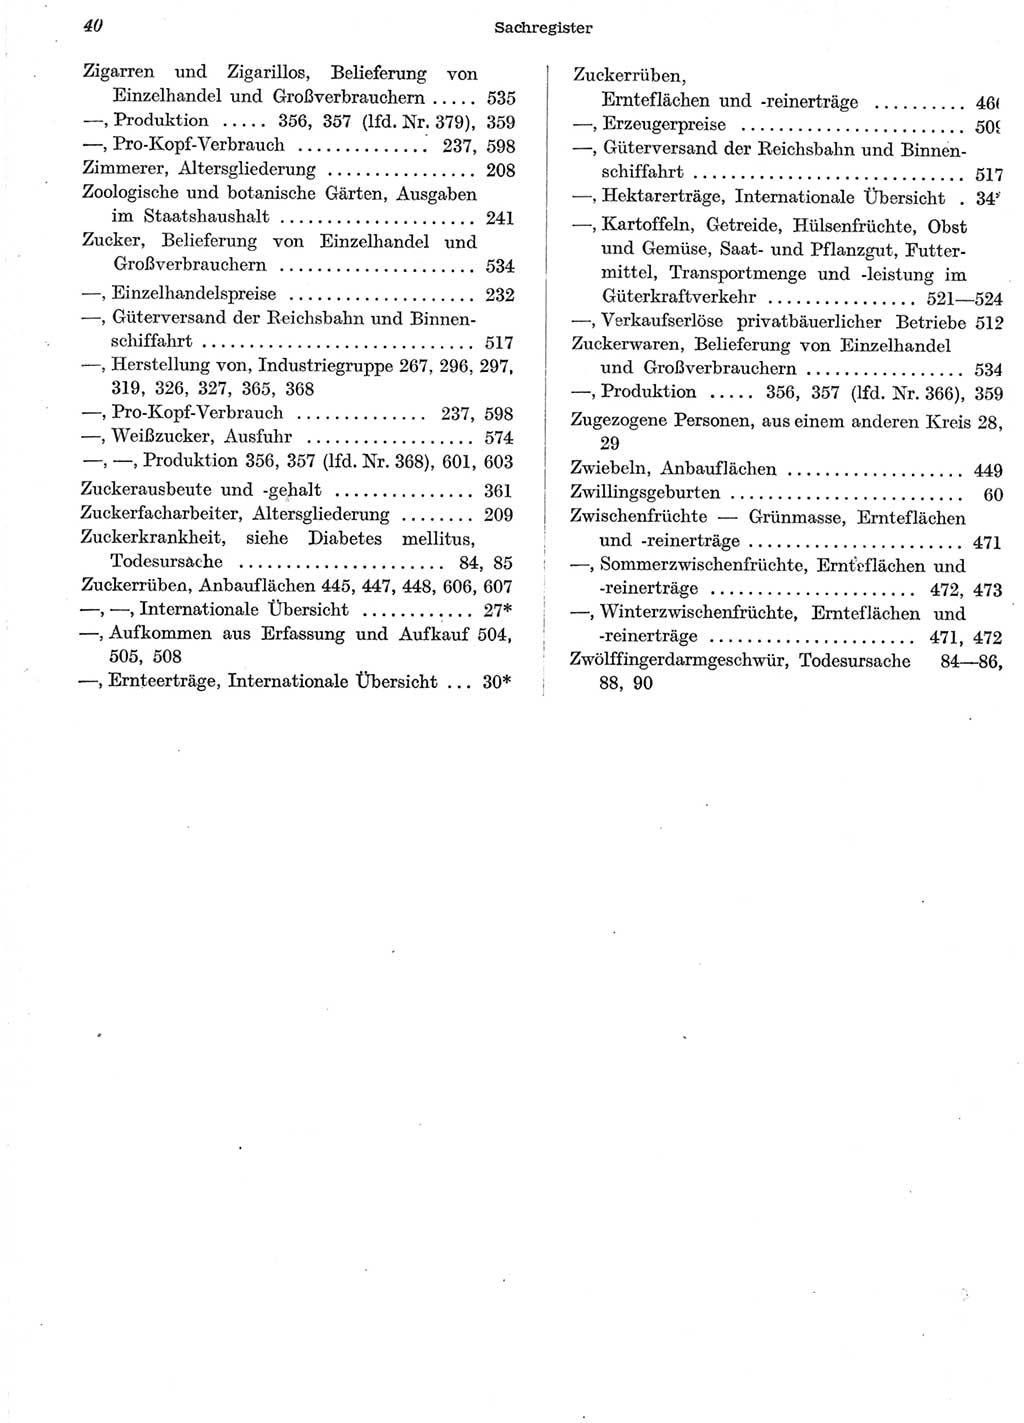 Statistisches Jahrbuch der Deutschen Demokratischen Republik (DDR) 1958, Seite 40 (Stat. Jb. DDR 1958, S. 40)